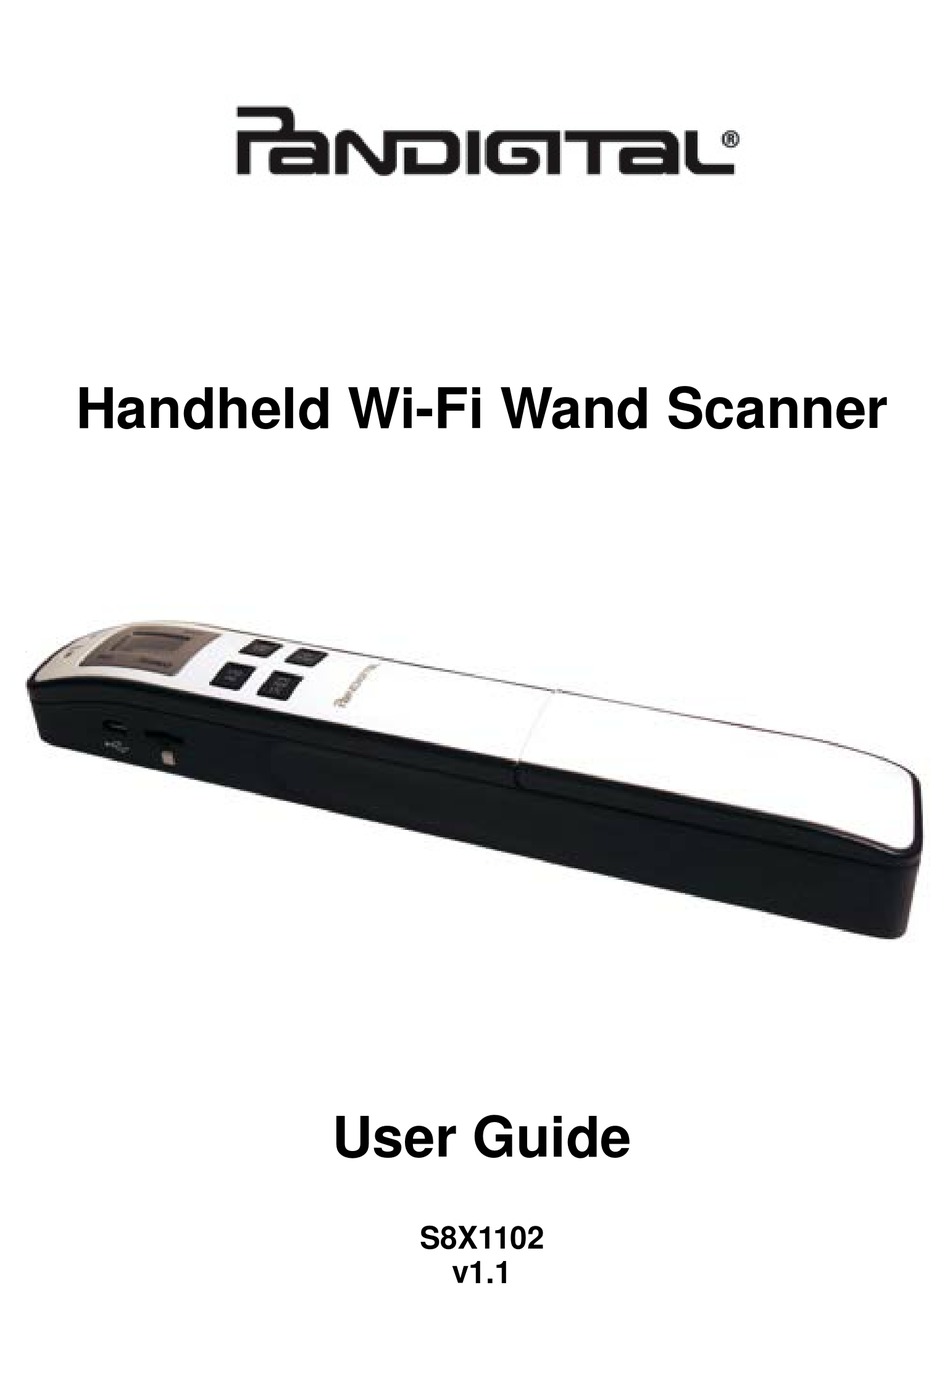 how to clean pandigital scanner